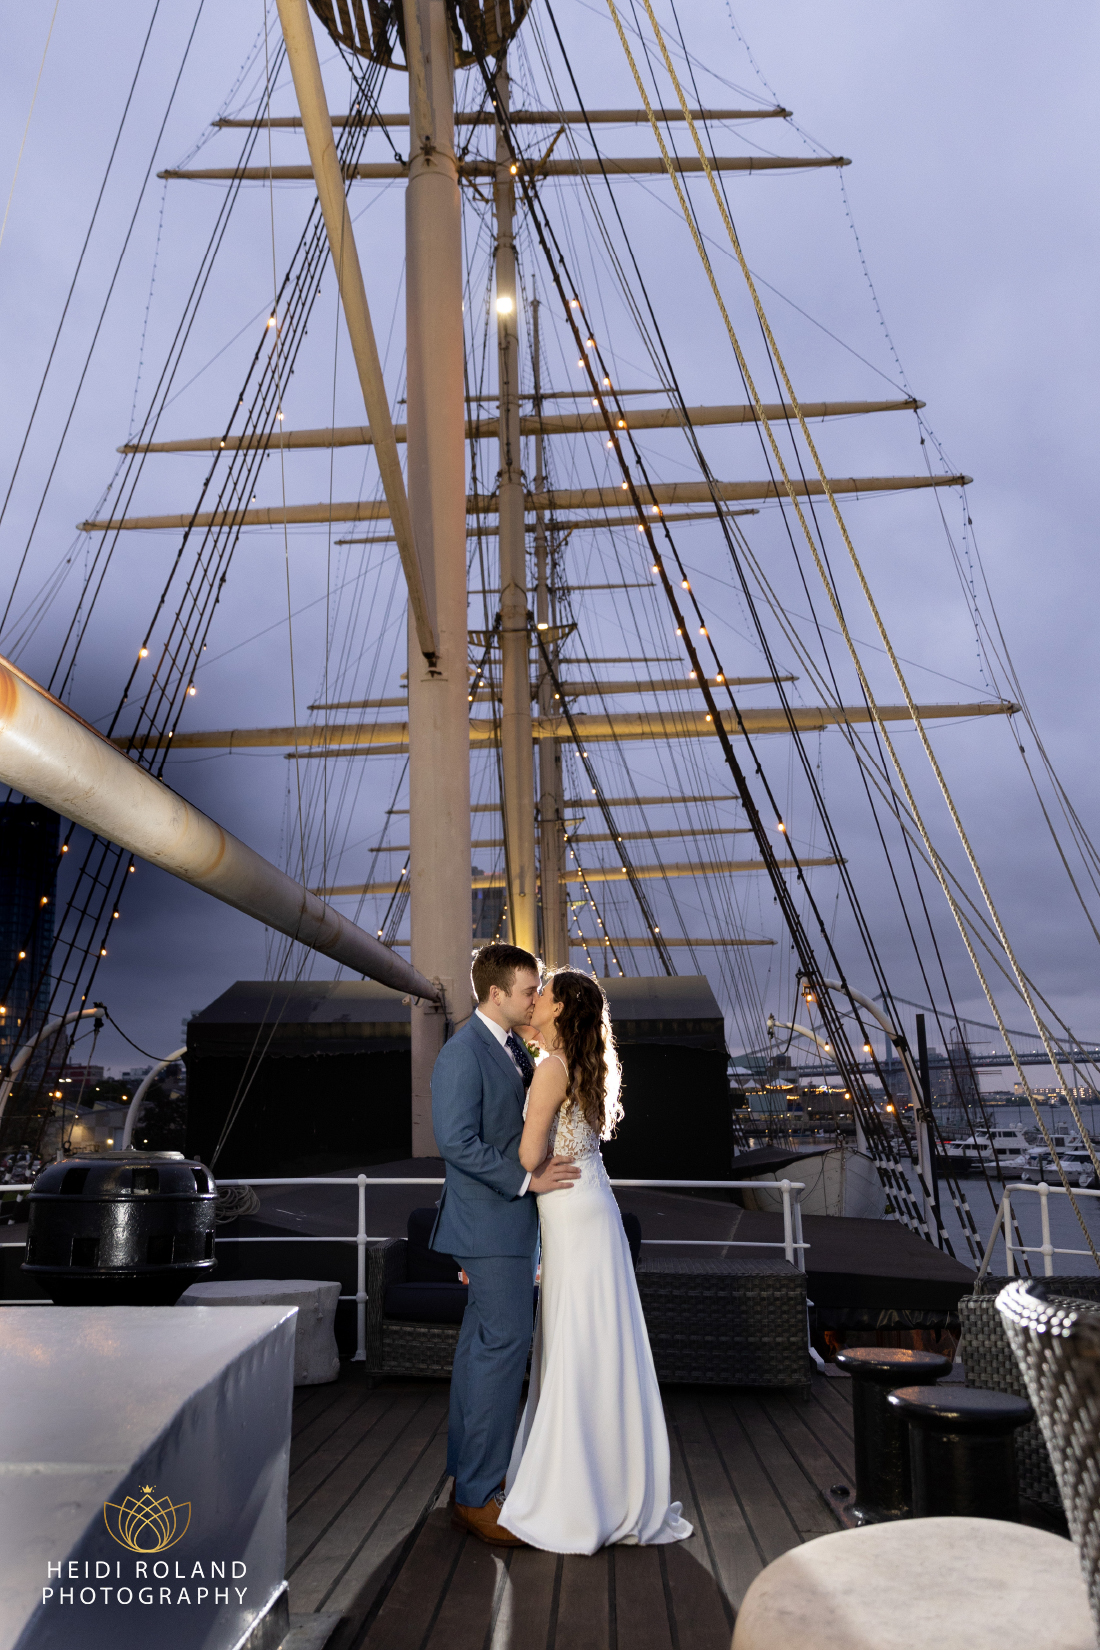 Moshulu boat wedding Philadelphia couples photo at night